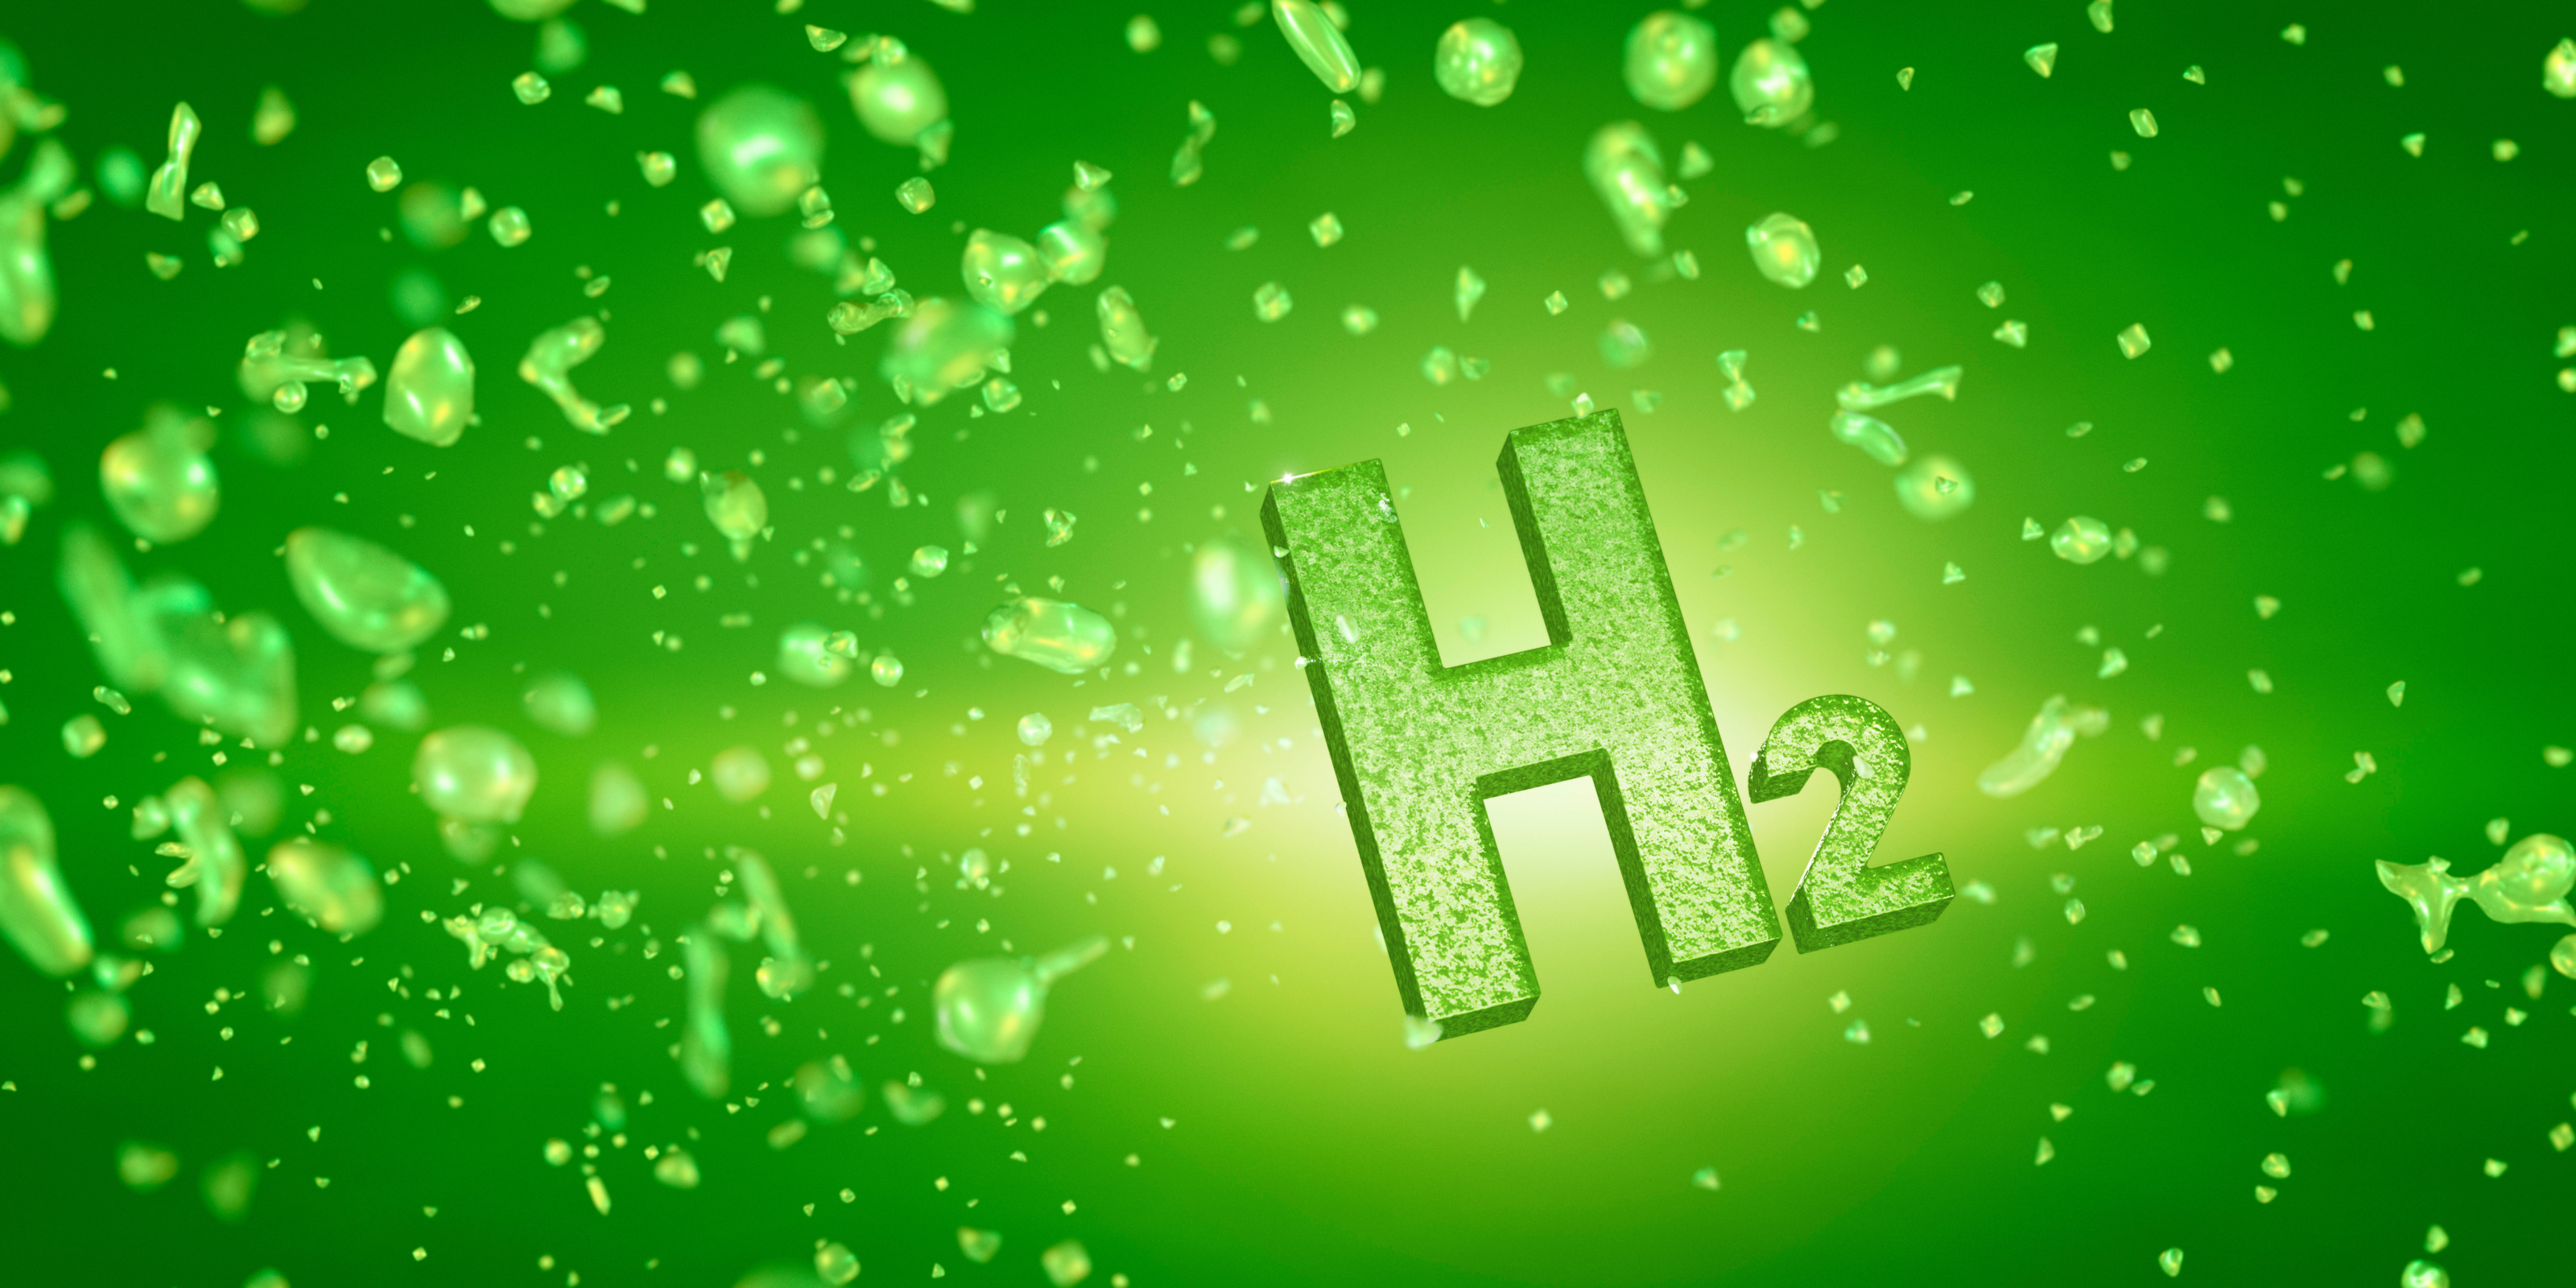 Buchstabe und Zahl H2 auf grünem Hintergrund mit Luftblasen